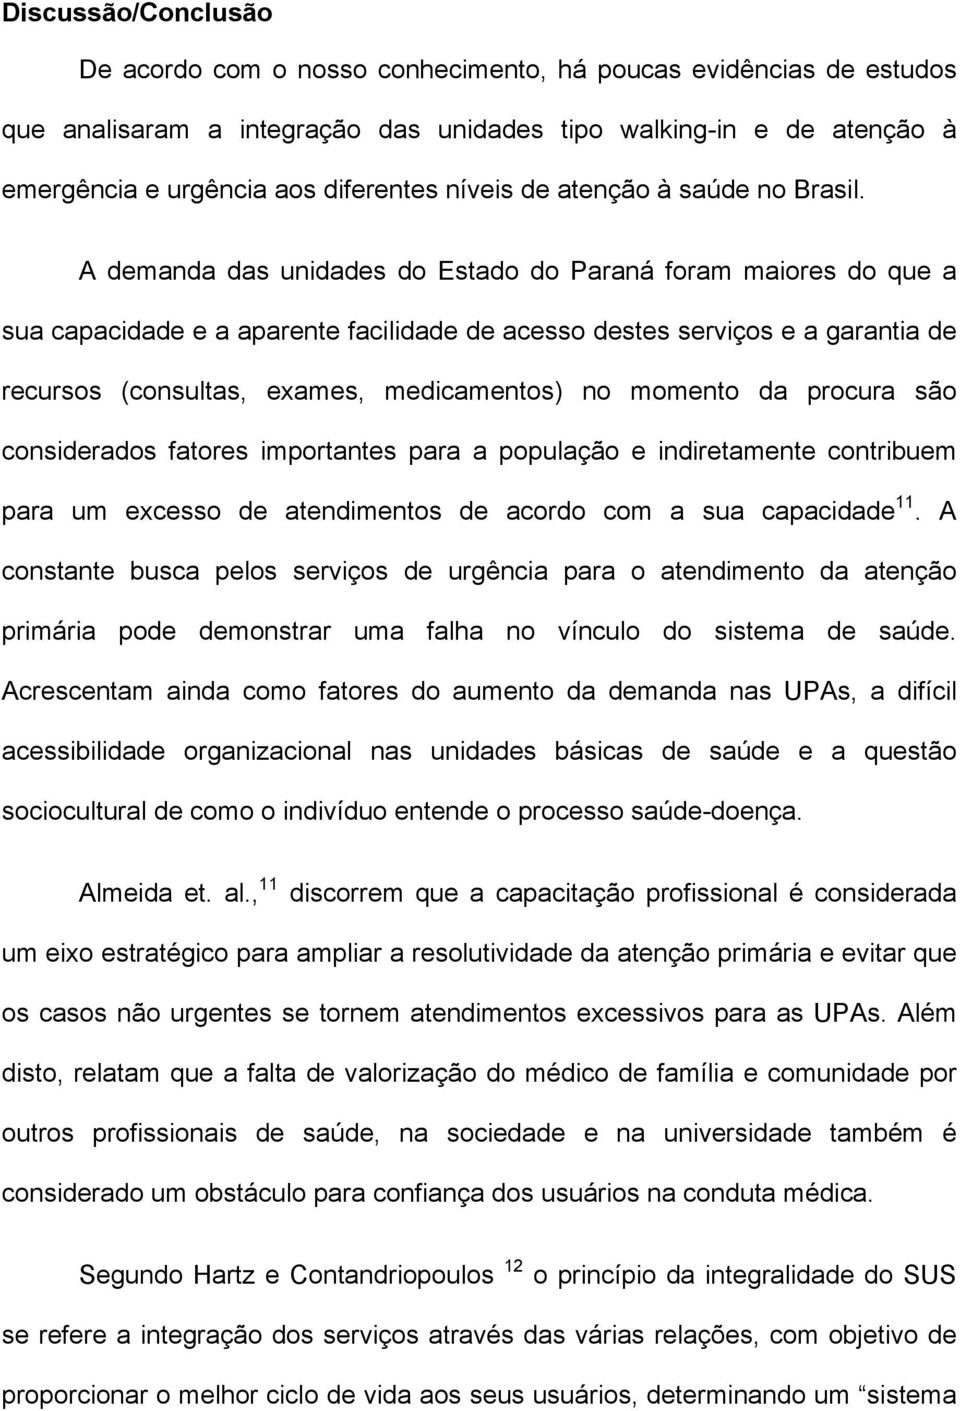 A demanda das unidades do Estado do Paraná foram maiores do que a sua capacidade e a aparente facilidade de acesso destes serviços e a garantia de recursos (consultas, exames, medicamentos) no